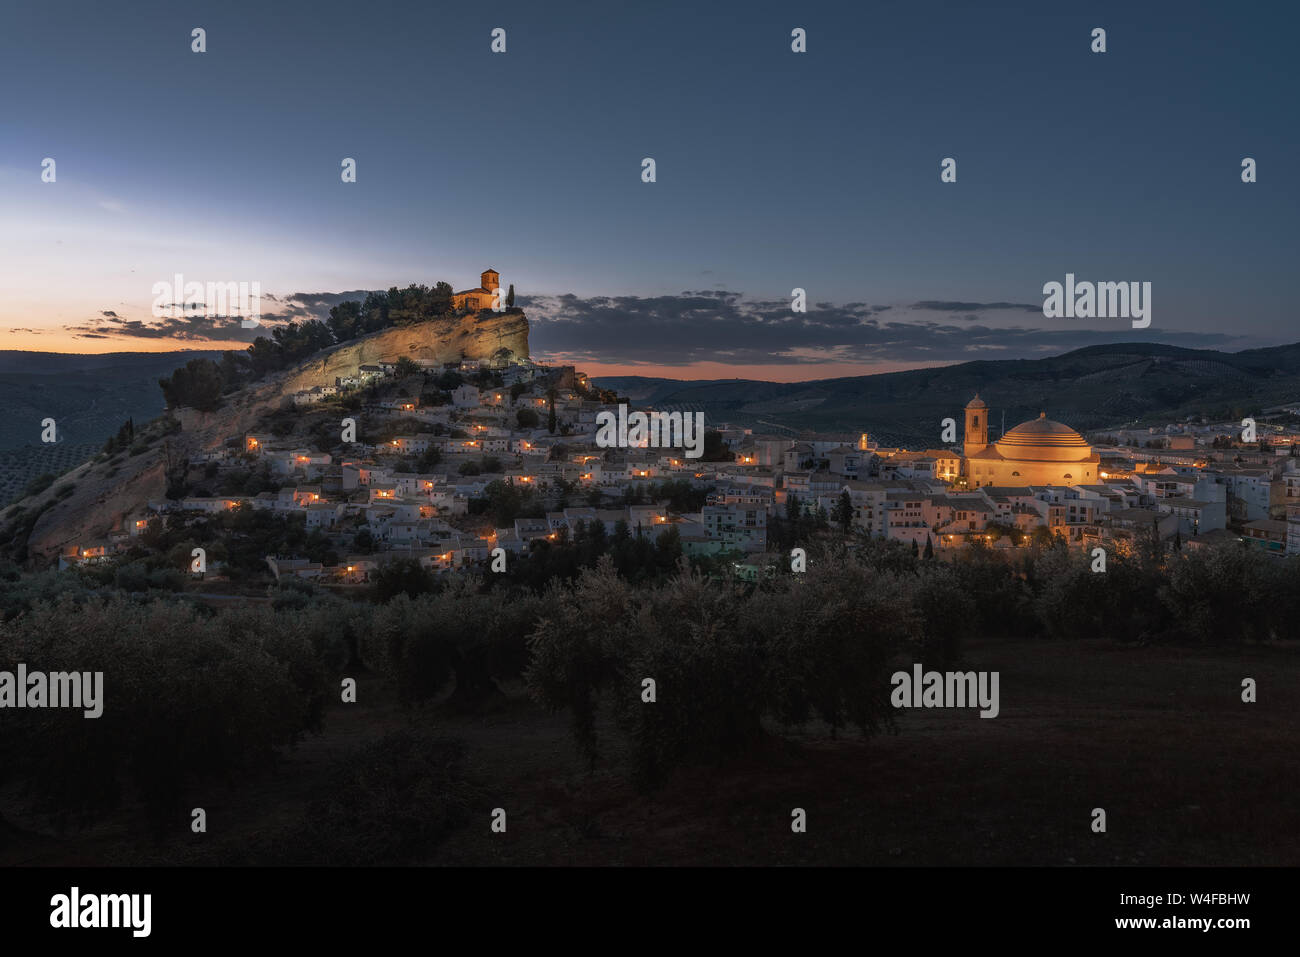 Luftaufnahme von Montefrio Stadt bei Nacht - Montefrio, Provinz Granada, Andalusien, Spanien Stockfoto